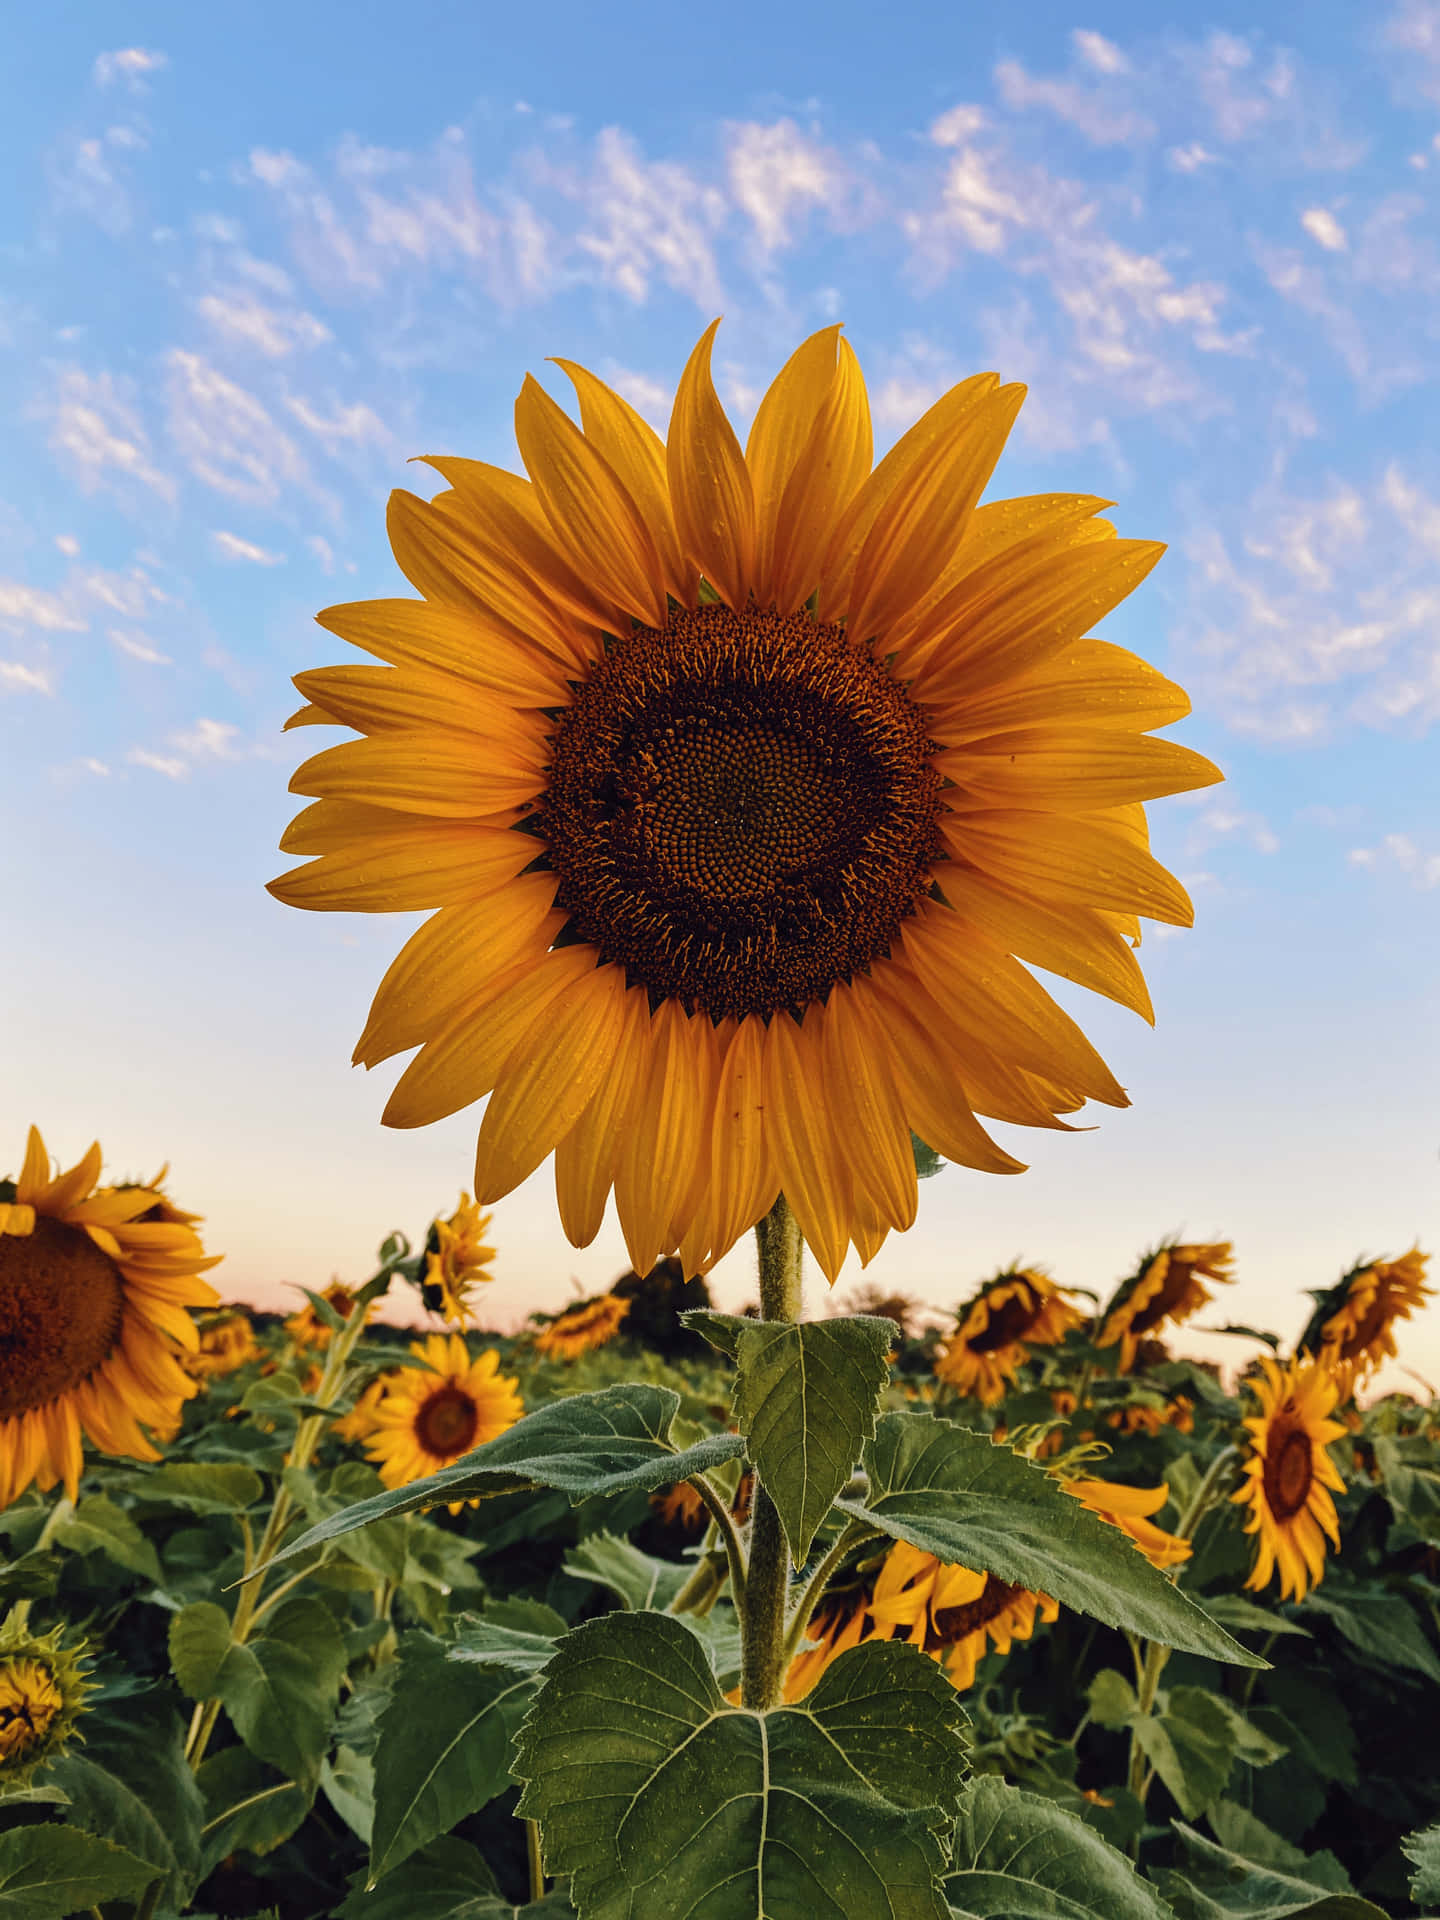 Erhellensie Ihren Tag Mit Dem Sonnenblumen-handy! Wallpaper